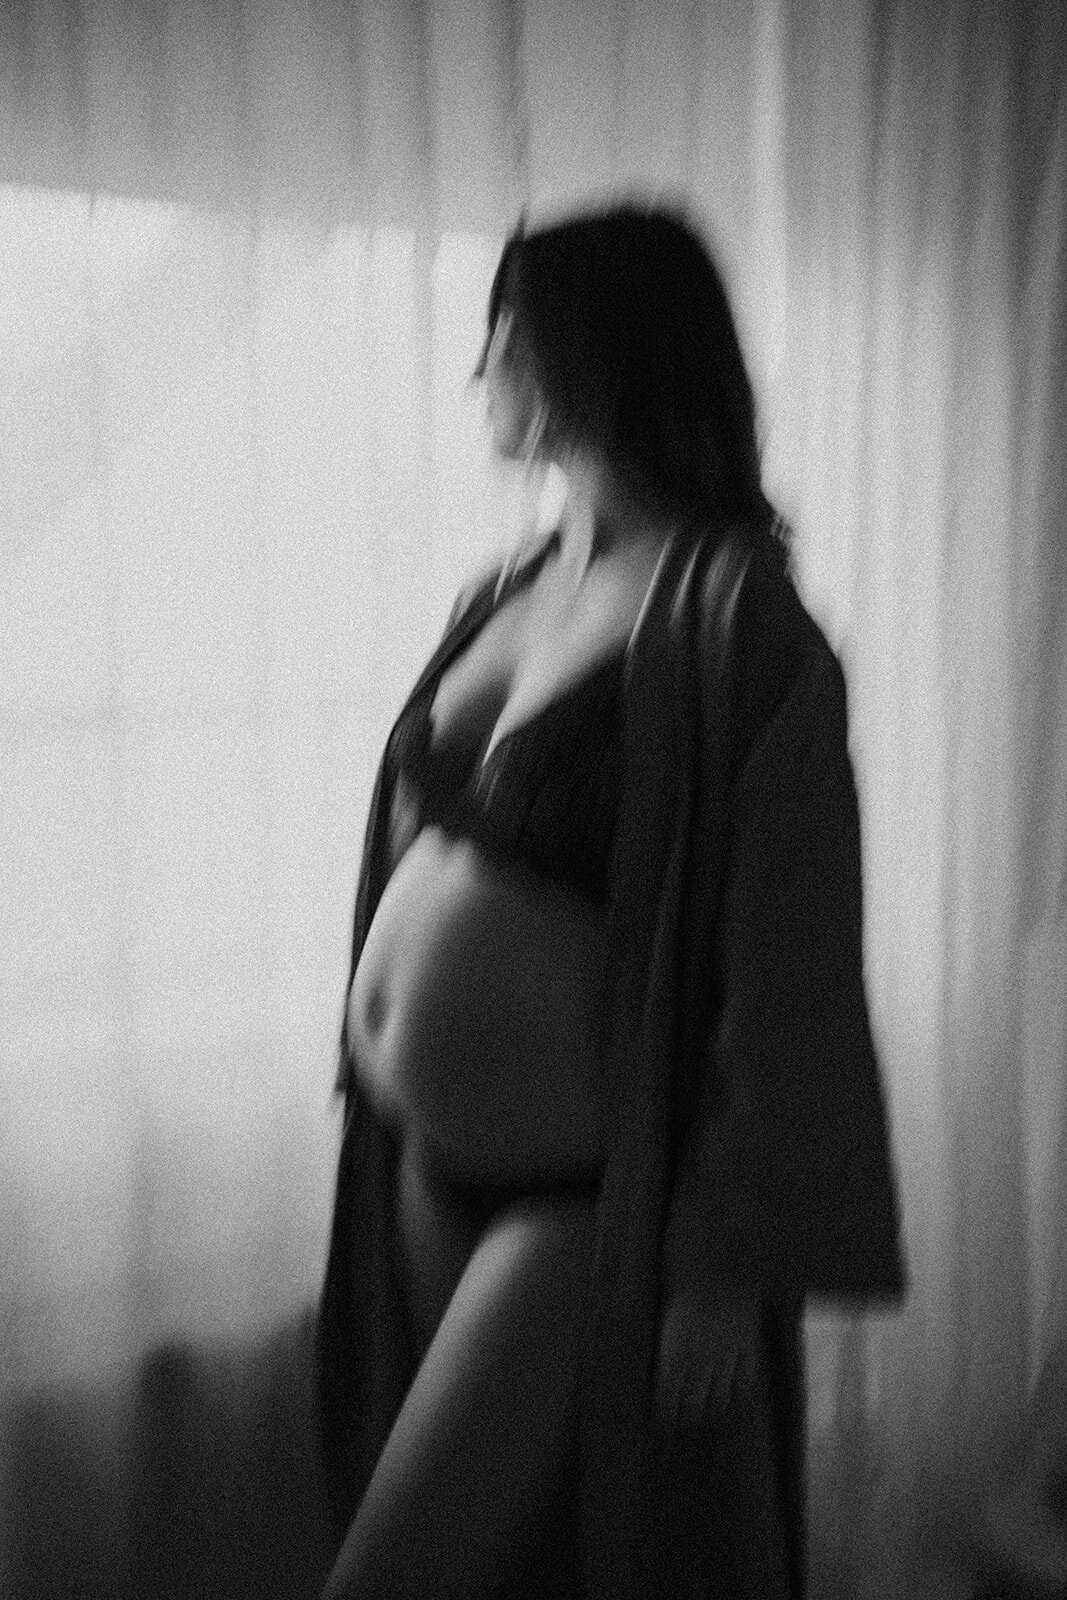 zwangere vrouw staat in lingerie voor het raam, bewegend beeld